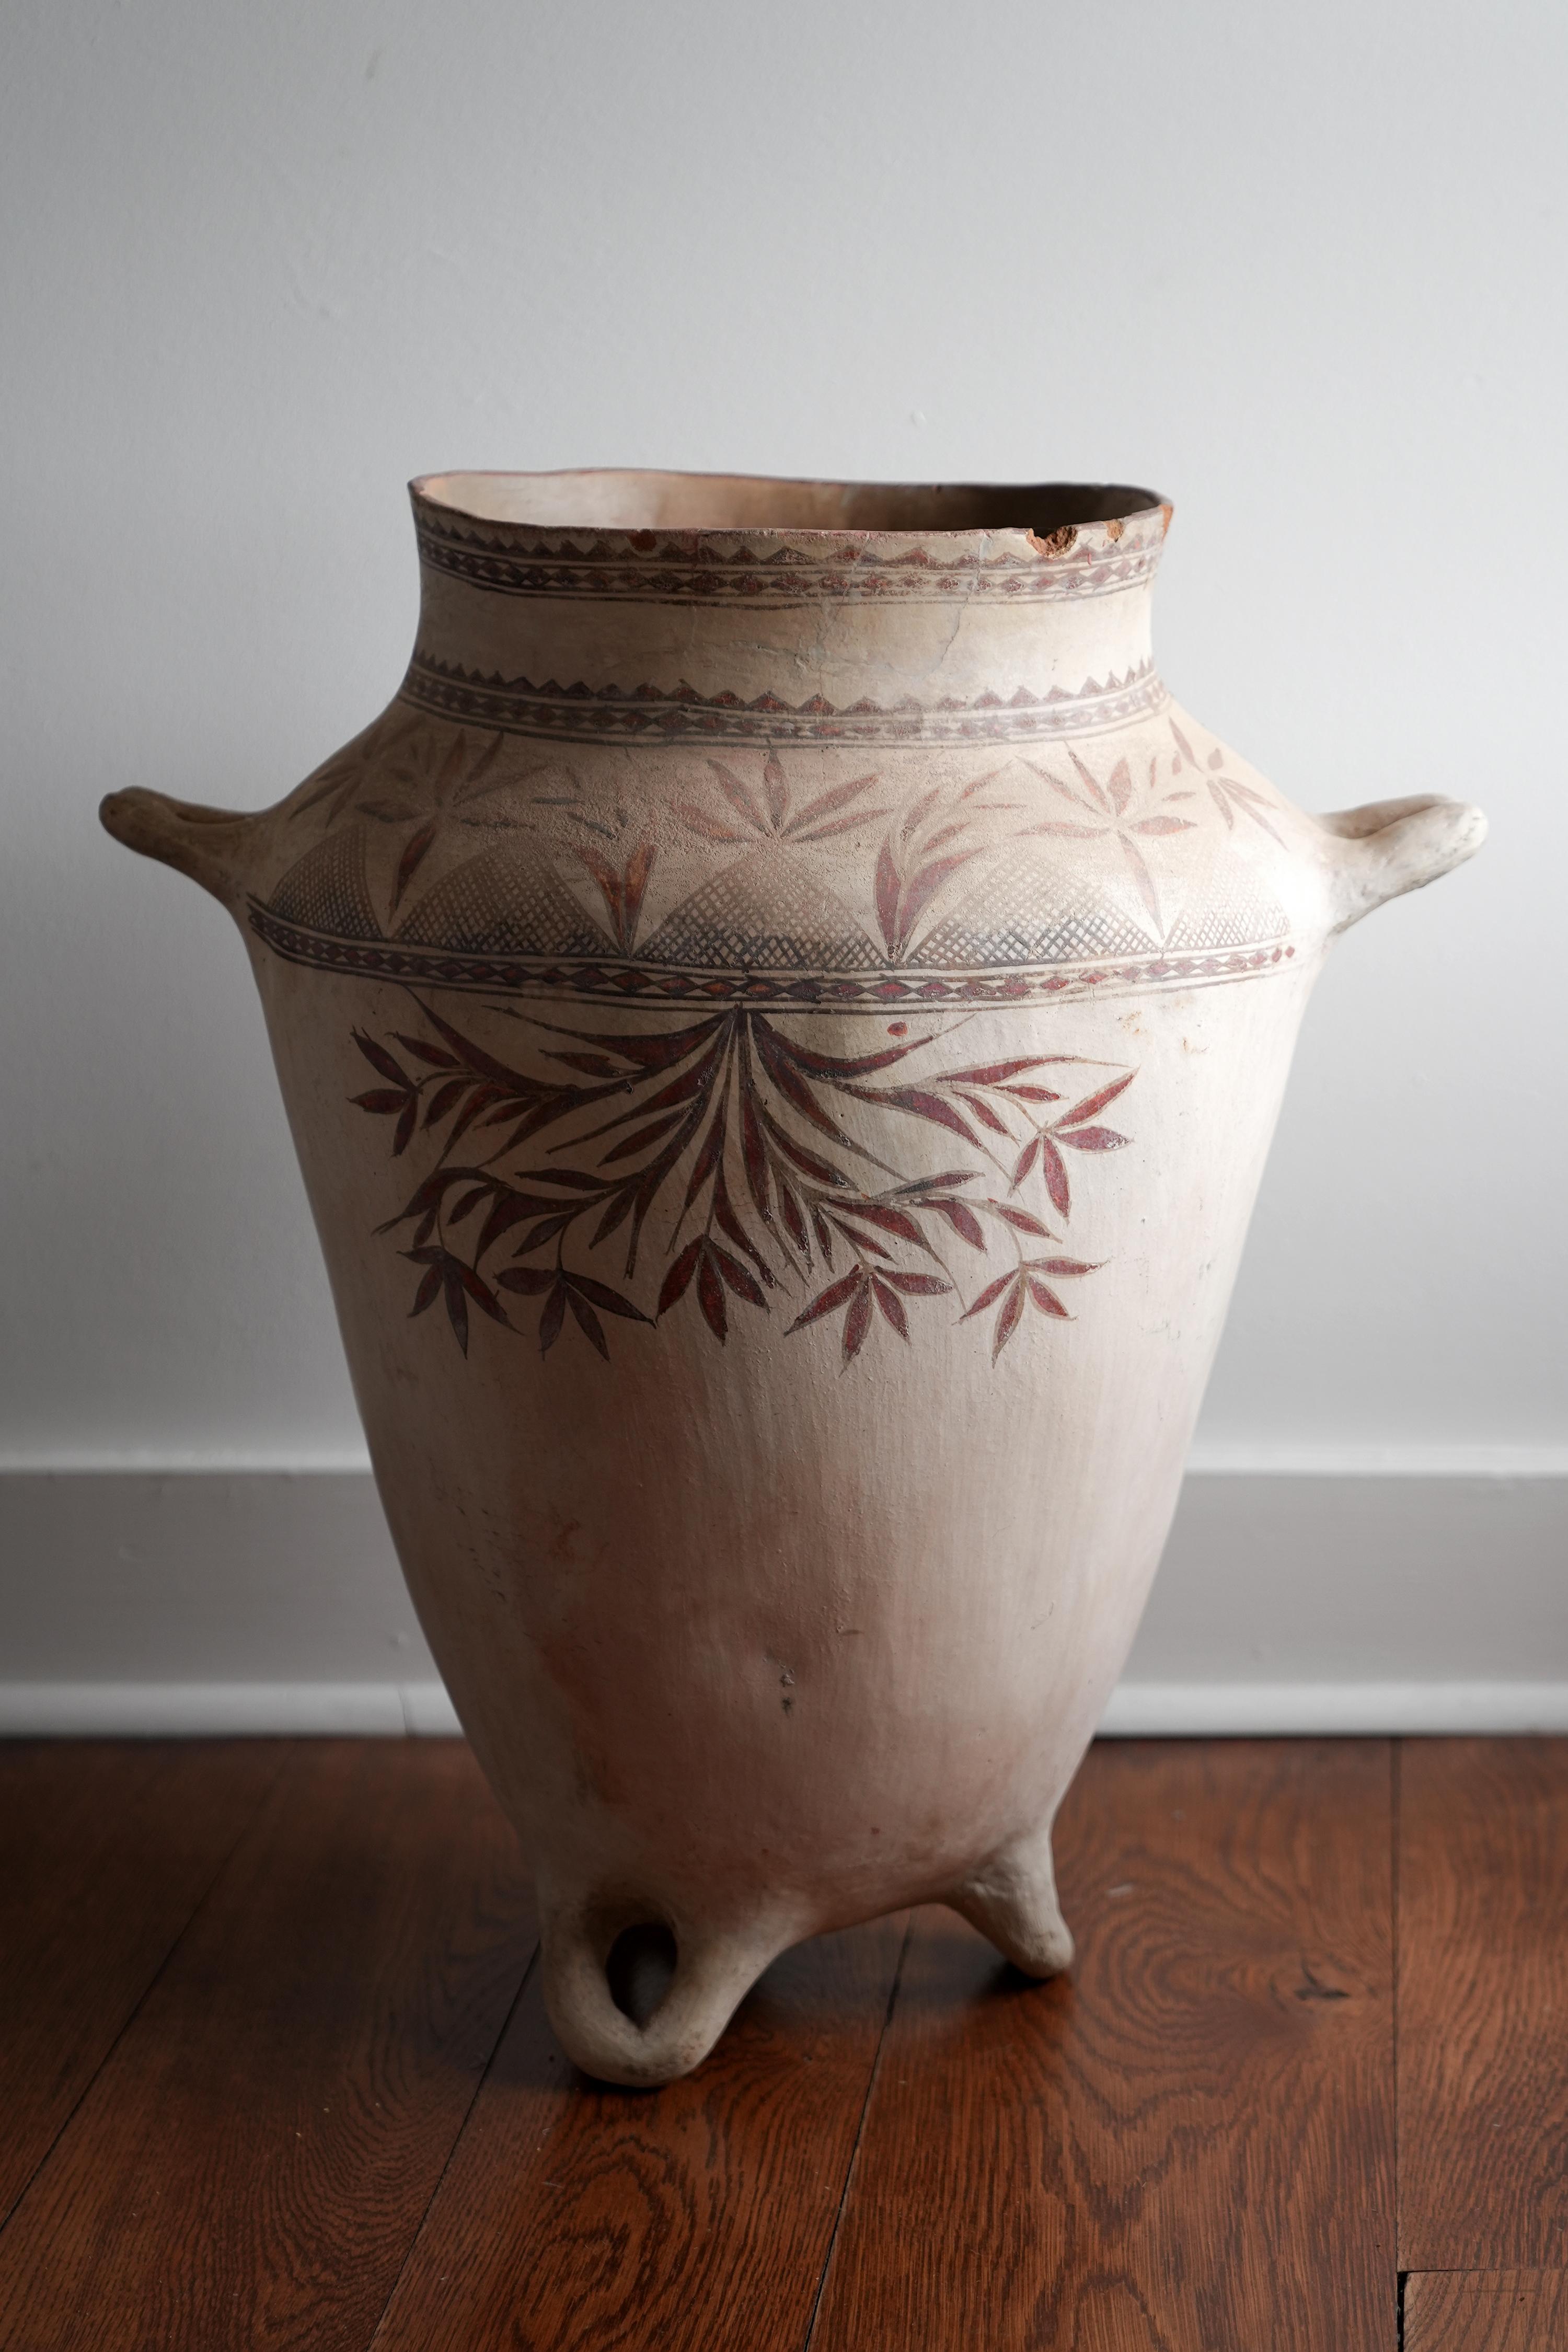 Pot mexicain en terre cuite peint du 19e siècle.
Survivant magnifiquement décoré. Cette pièce a subi d'anciennes restaurations mais nous avons de la chance qu'elle existe encore. Très rare.